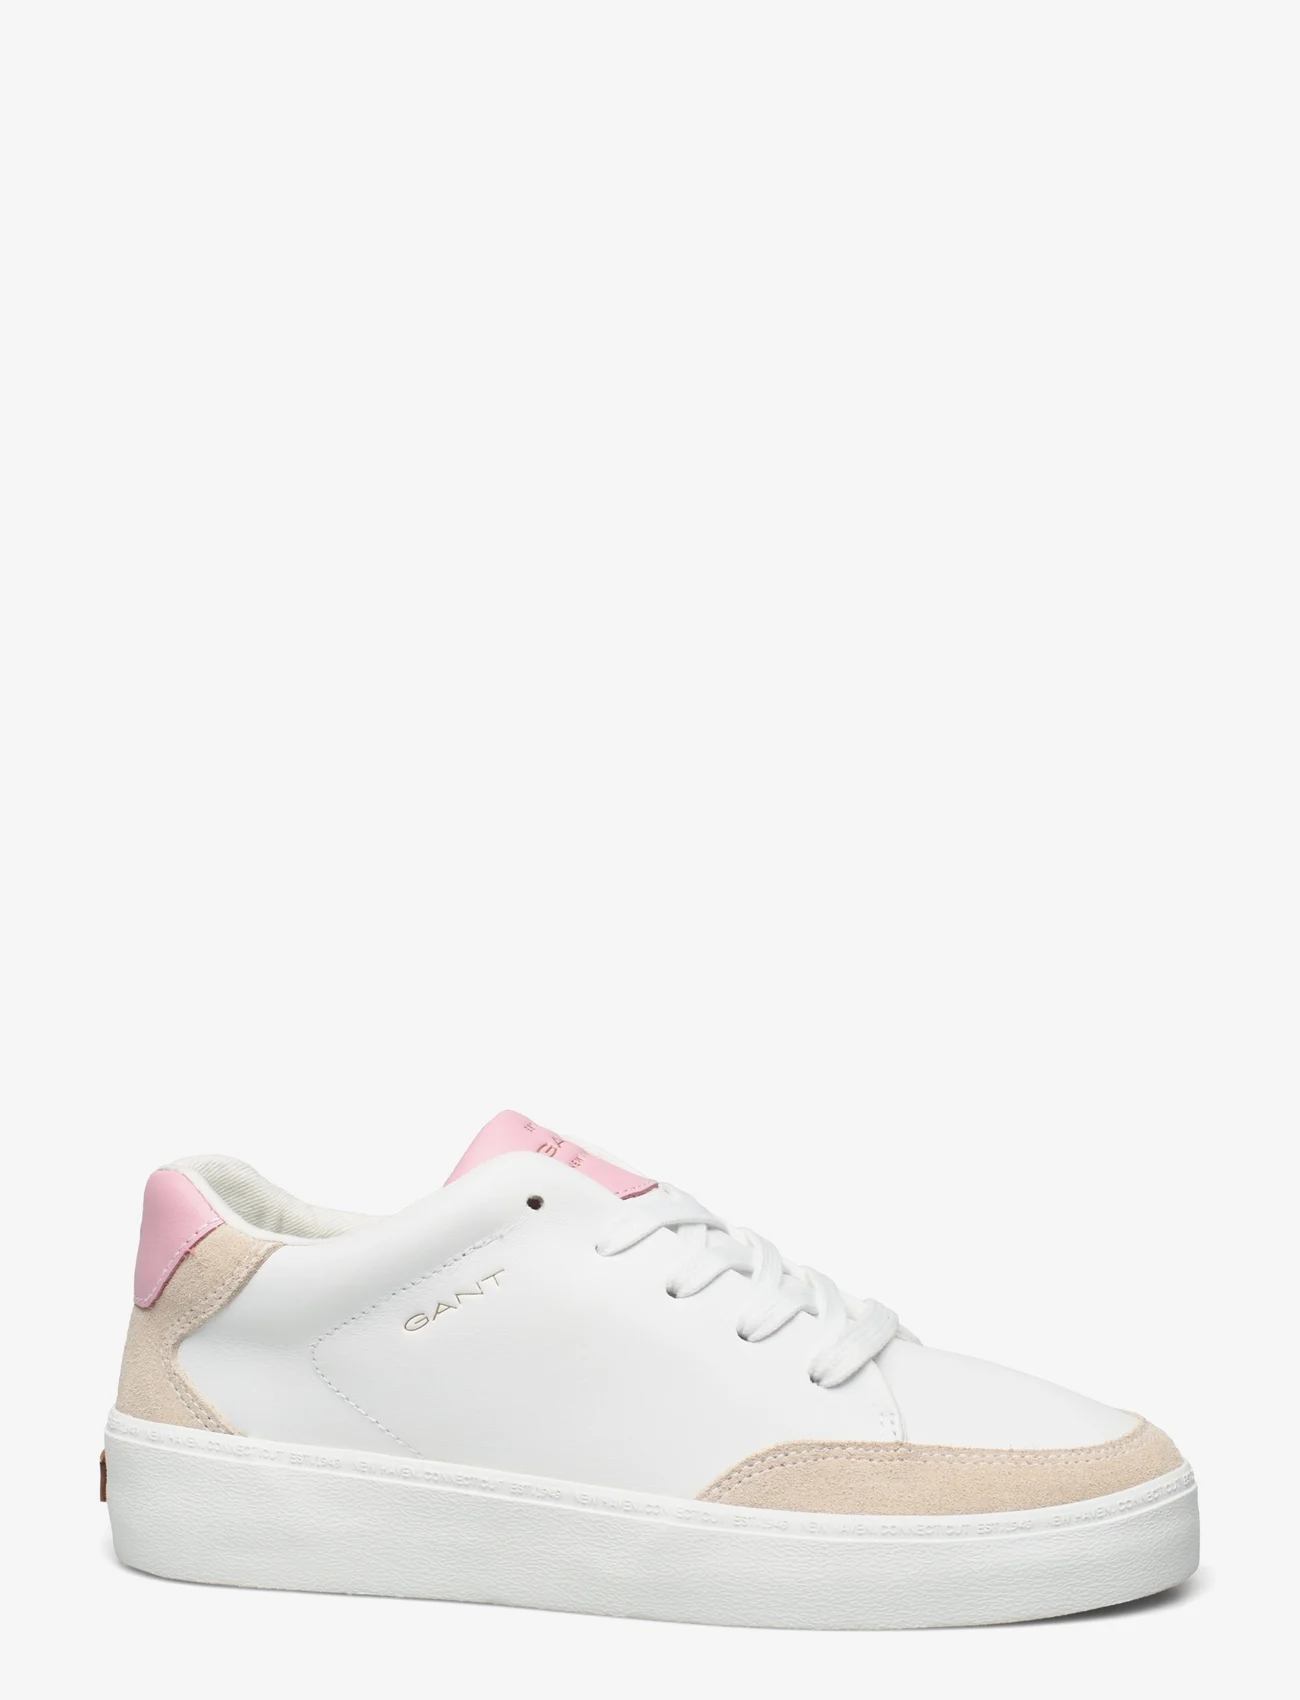 GANT - Lagalilly Sneaker - white/pink - 1